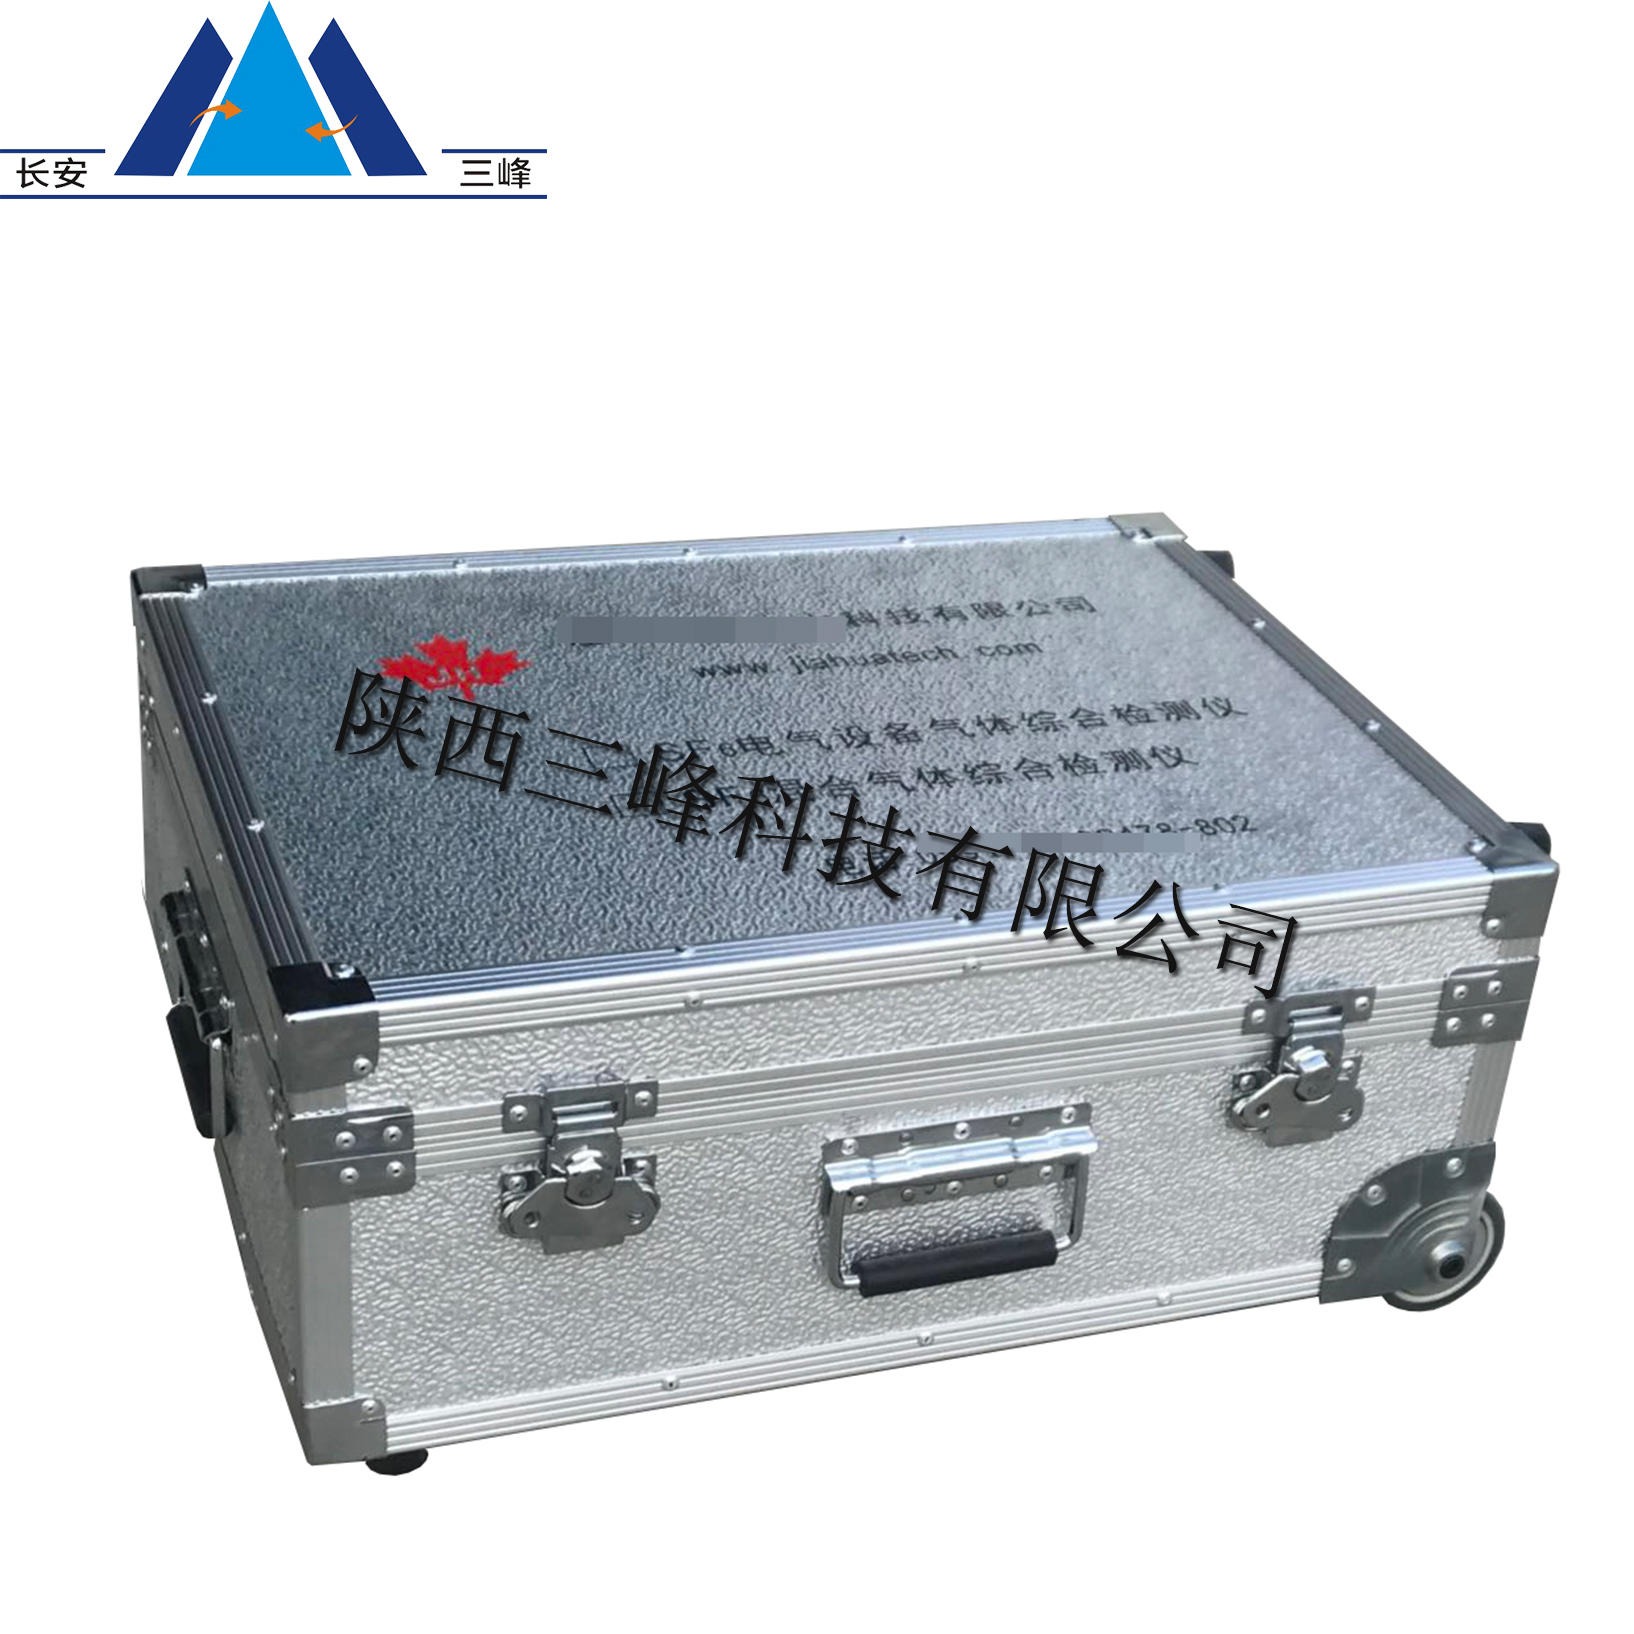 陕西三峰铝箱 厂家批量生产手提拉杆箱 定制铝合金箱 航空箱定制